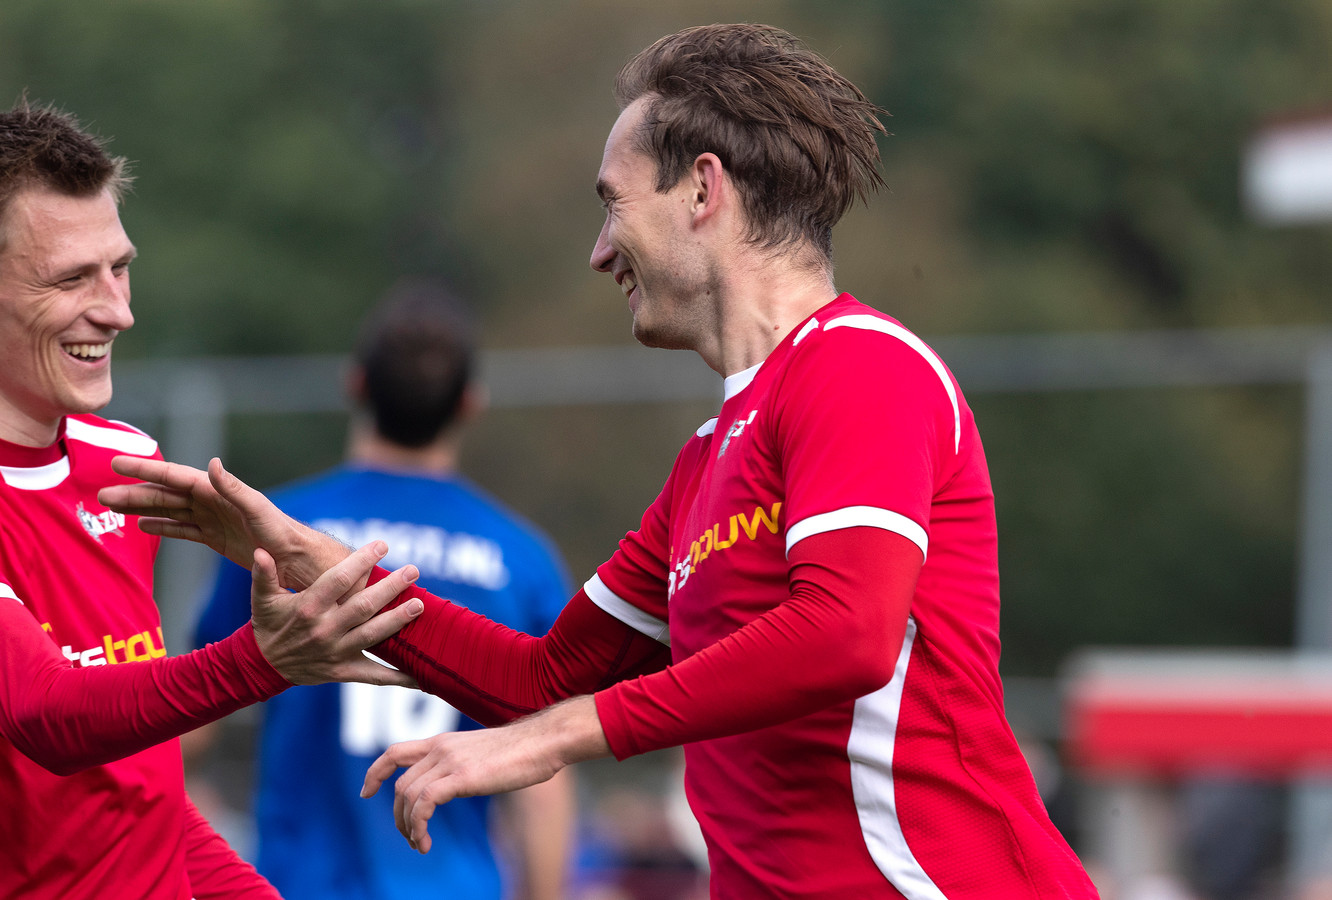 Joost Rasing scoorde zaterdag tegen DETO zijn vijfde competitietreffer voor zaterdaghoofdklasser AZSV uit Aalten.